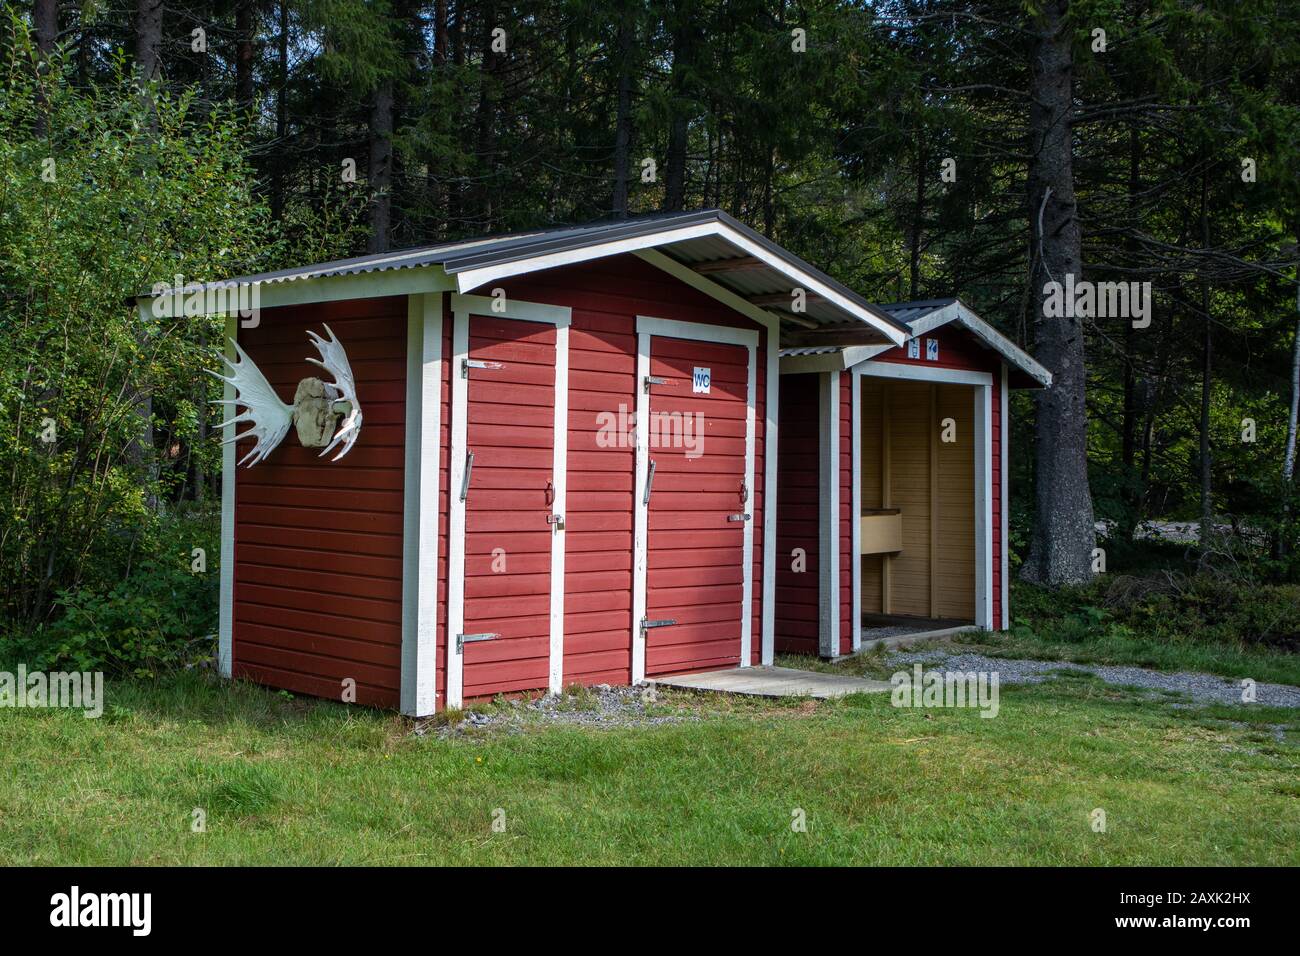 Finlande camping rural rouge bois traditionnel wc toilettes dans la forêt verte avec de grands orignaux Banque D'Images